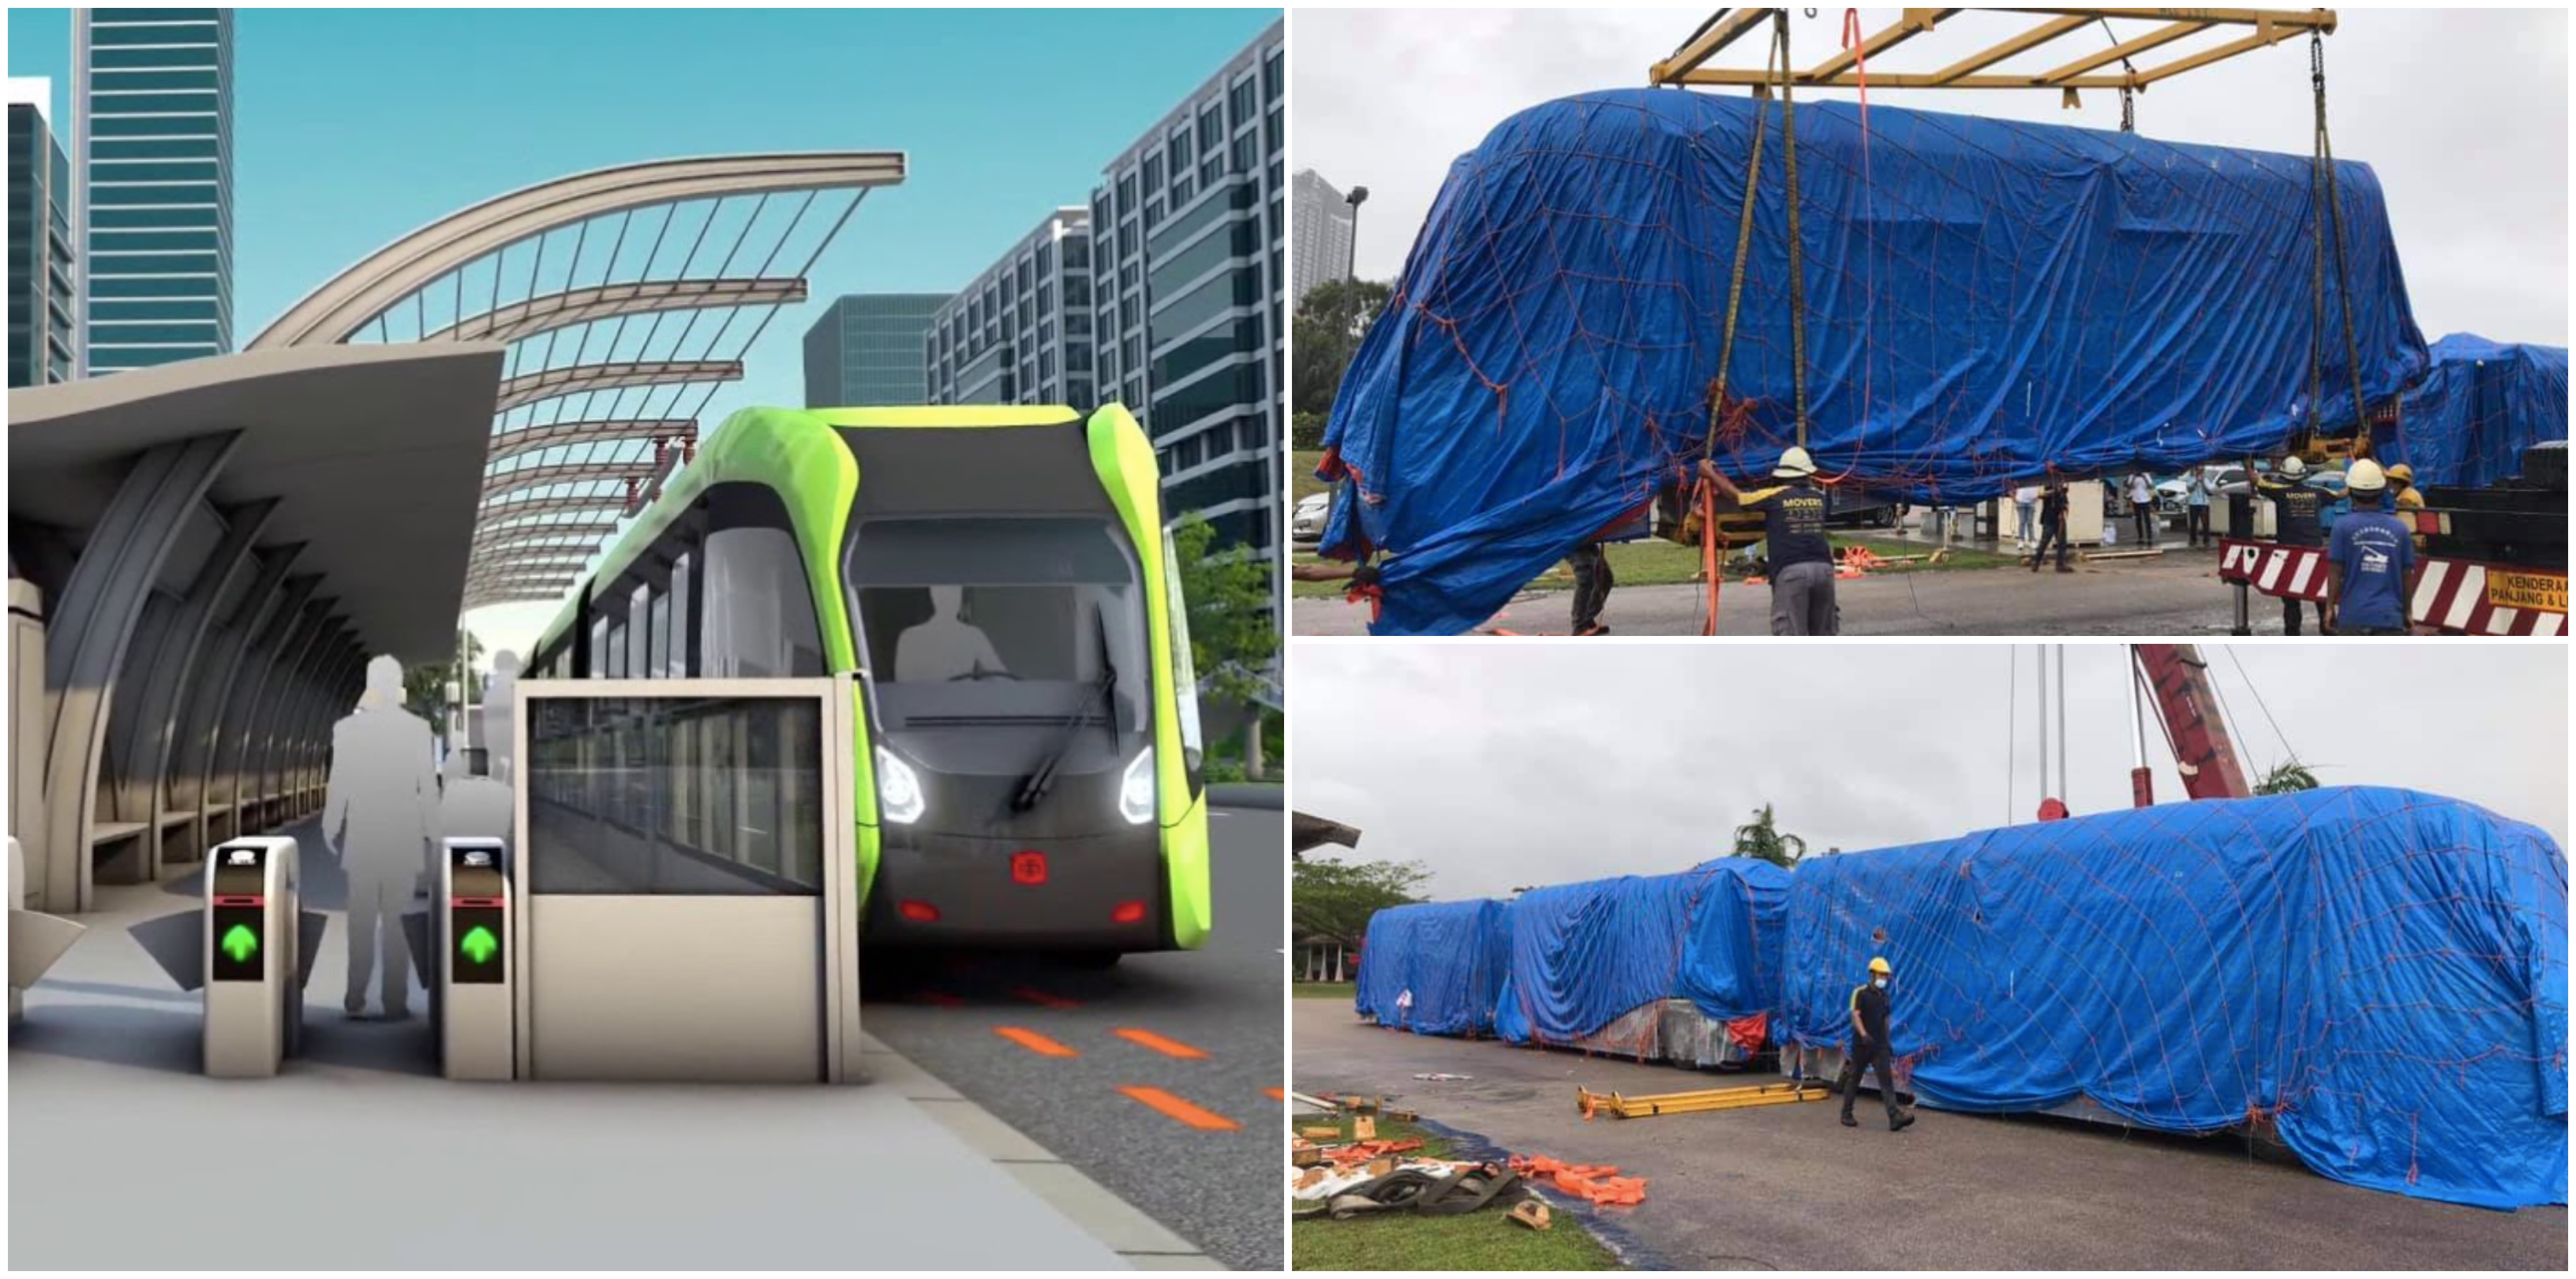 Iskandar Johor Bakal Lancarkan ART, Pengangkutan Macam Train Tanpa Pemandu